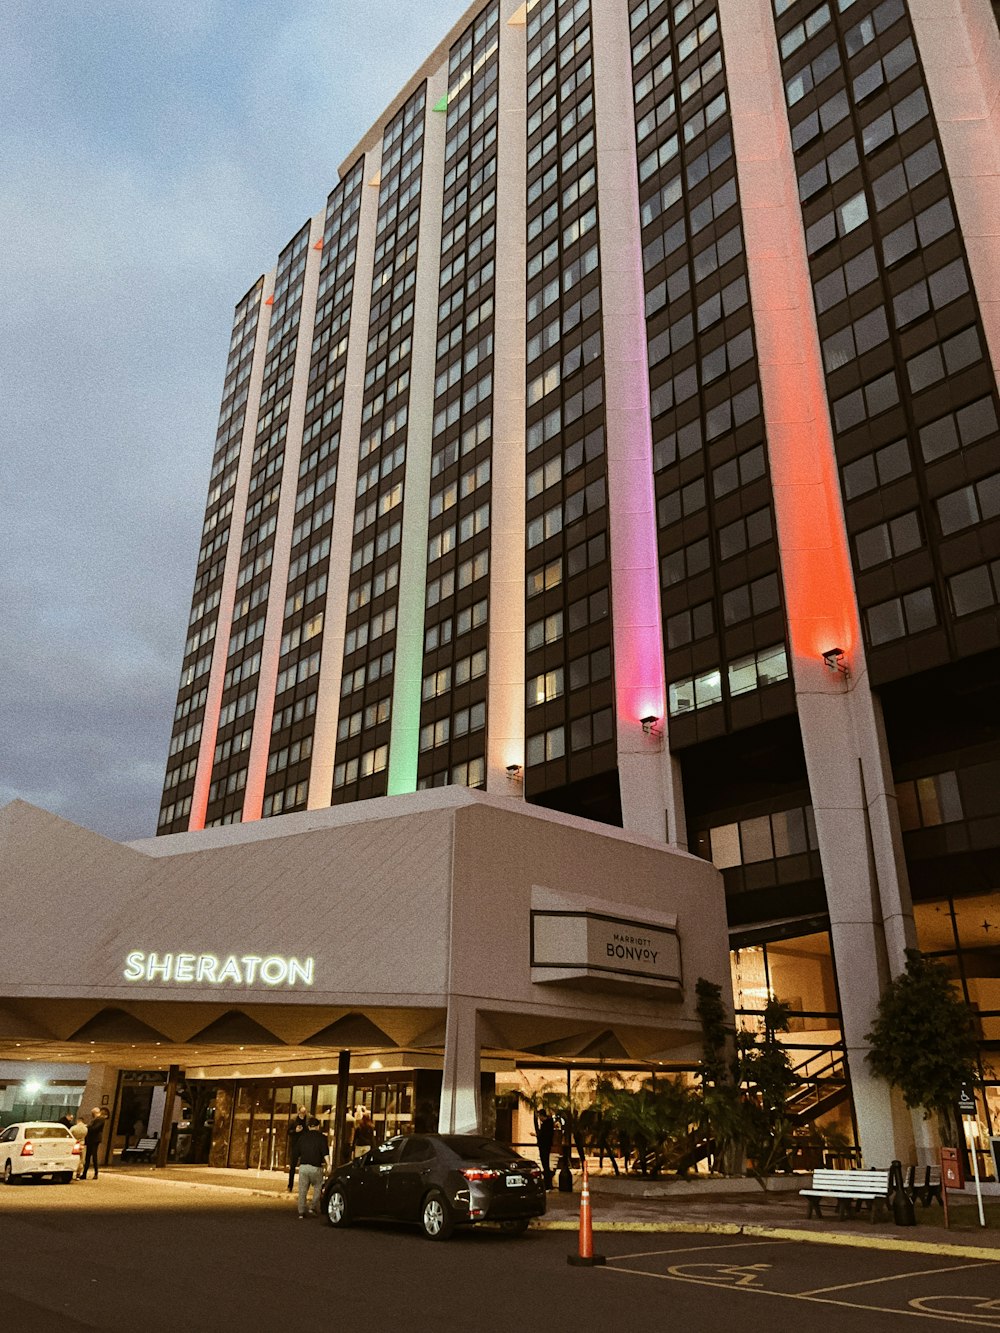 El Hotel Sheraton está iluminado con los colores del arco iris